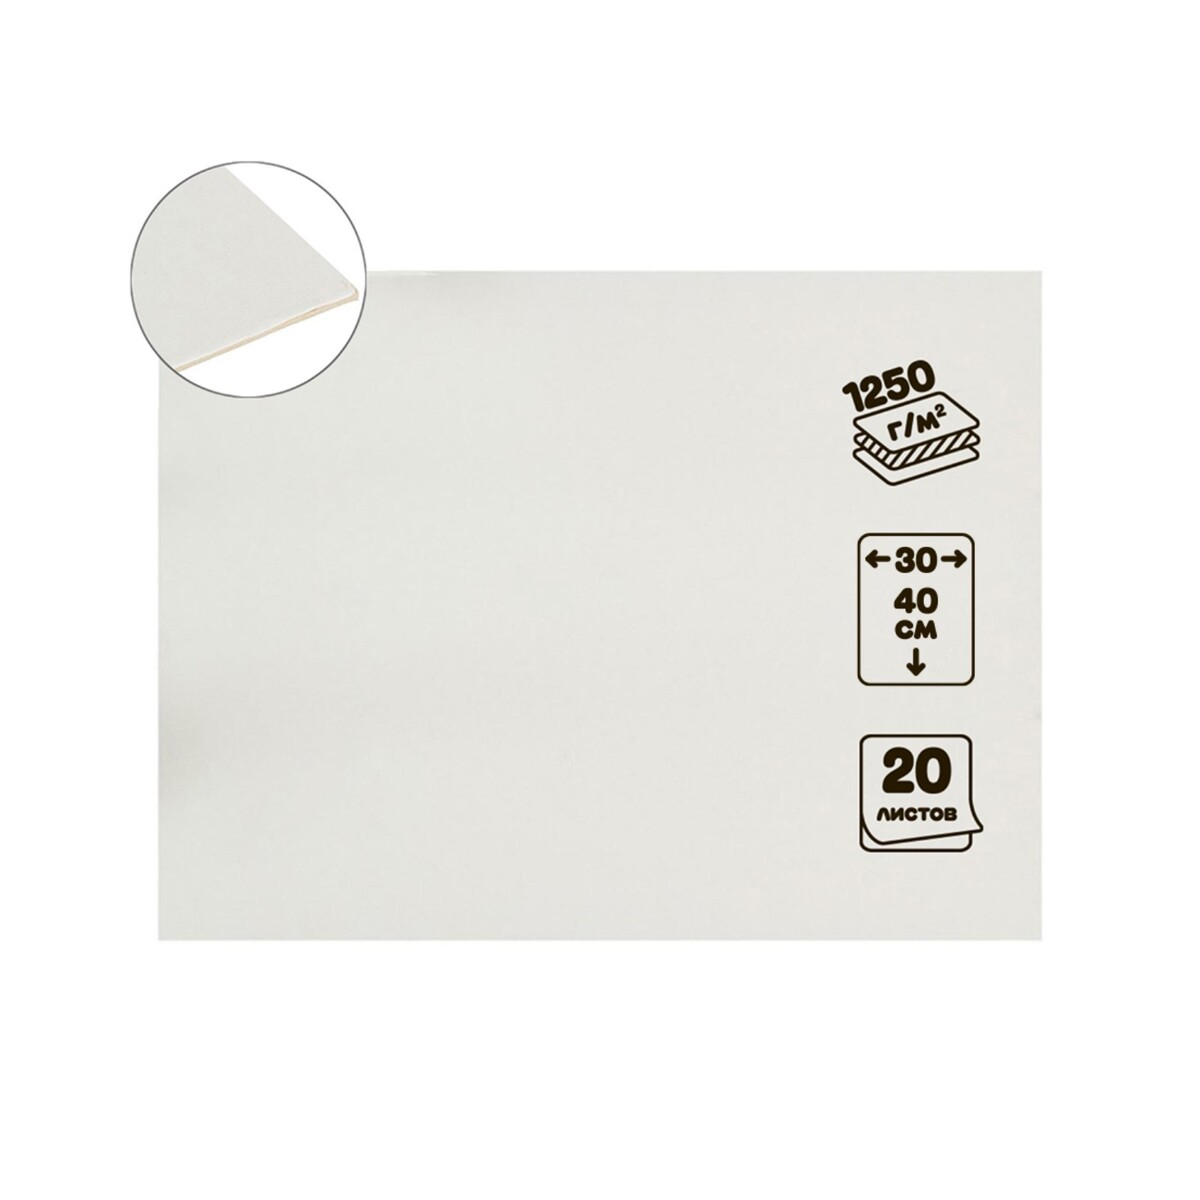 Картон переплетный 2.0 мм, 30 х 40 см, 20 листов, 1250 г/м², белый картон белый а4 8 листов